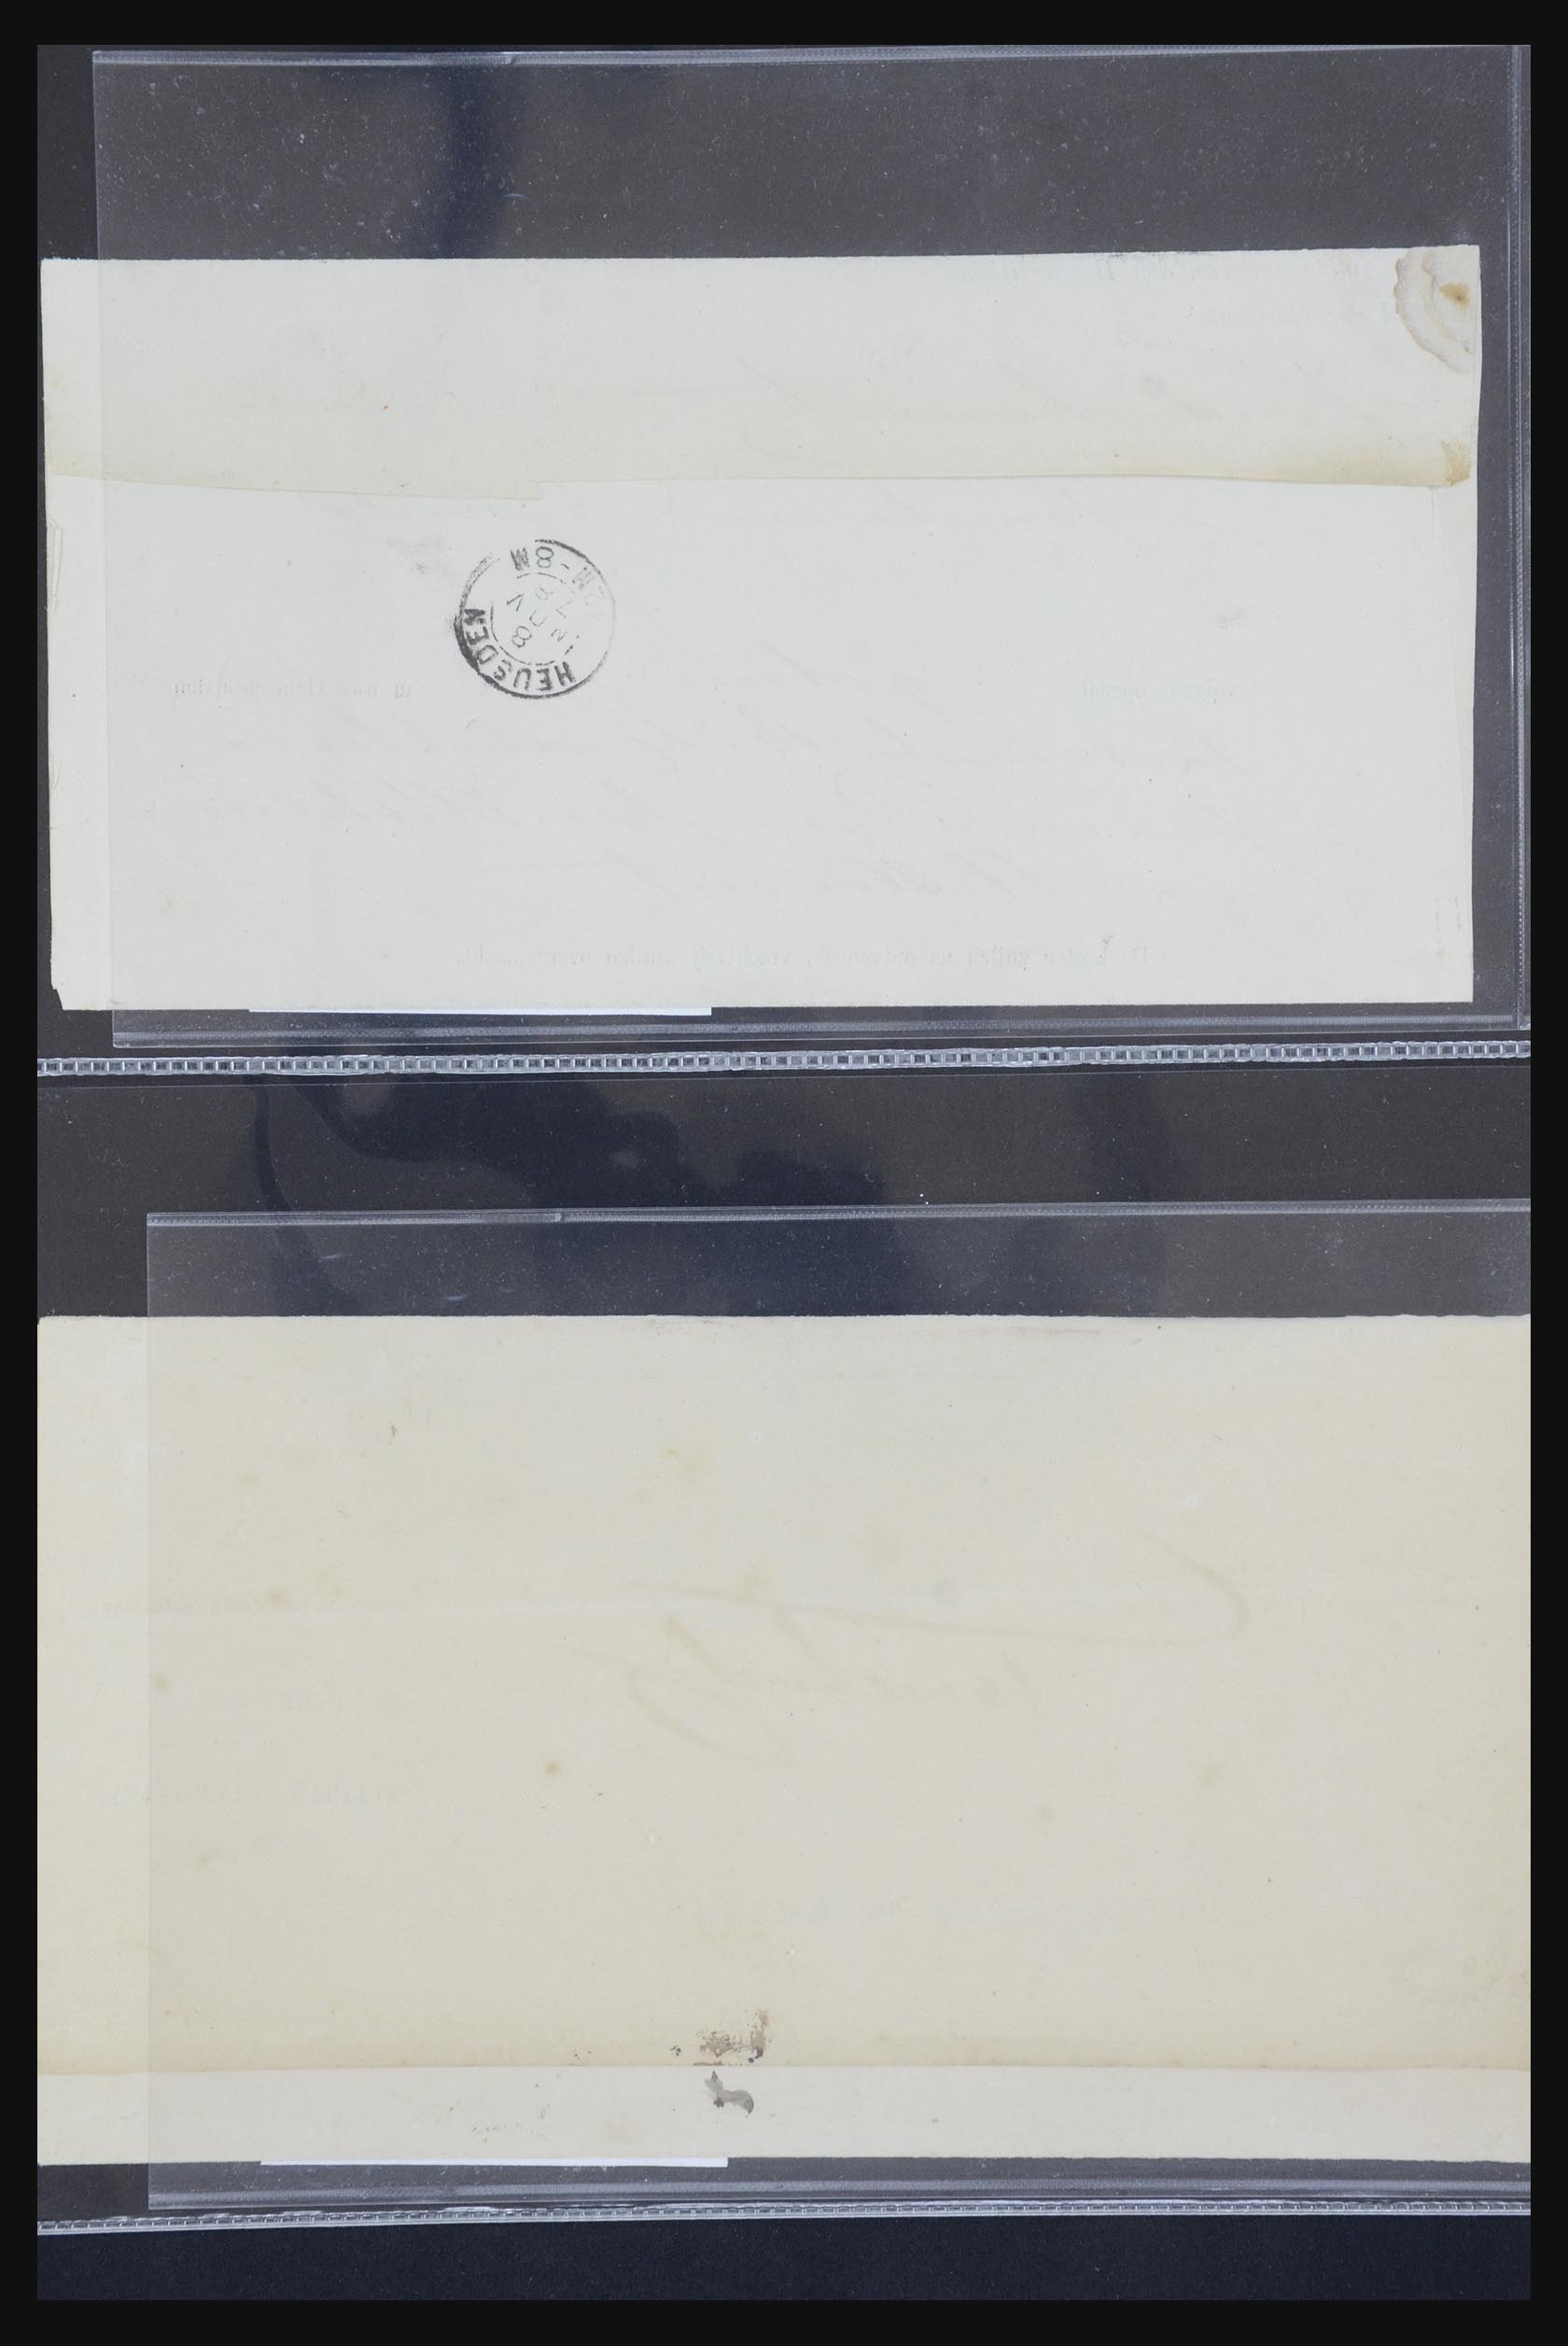 21718 010 - 21718 Briefkaarten met gotische langstempels.